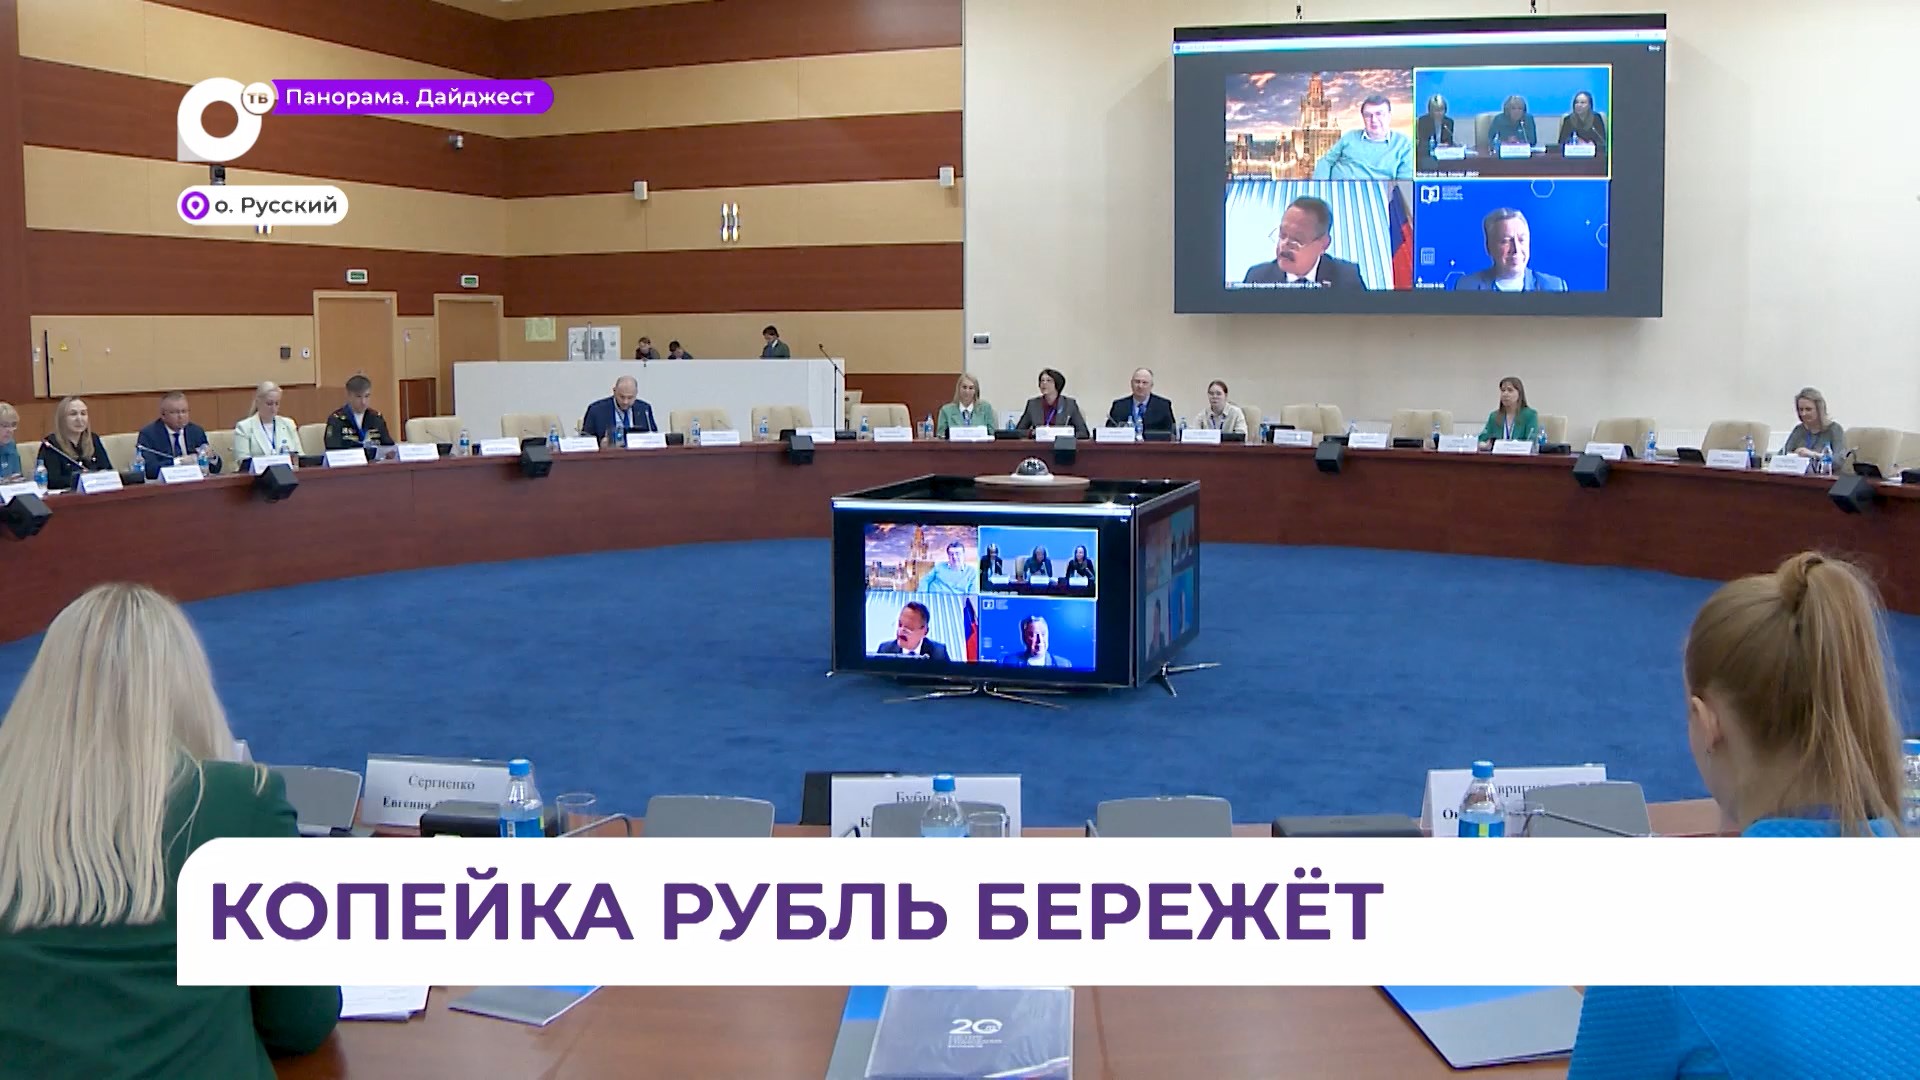 Всероссийская конференция по финансовому просвещению прошла во Владивостоке